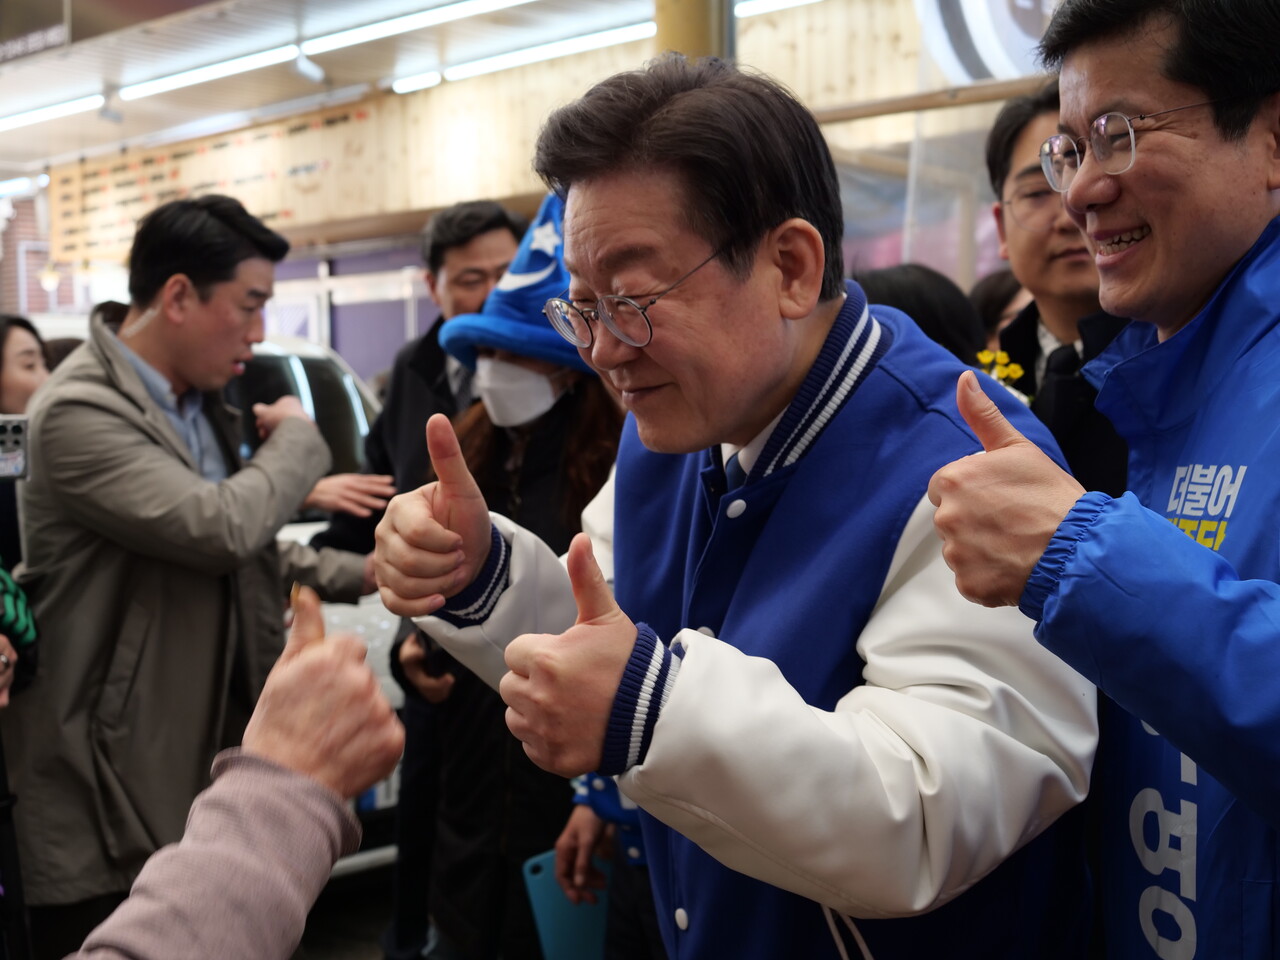 이재명 민주당 대표와 이영선 세종갑 국회의원 예비후보가 지지자인 상인과 함께 두 손가락을 들어올리고 있다. 한지혜 기자.